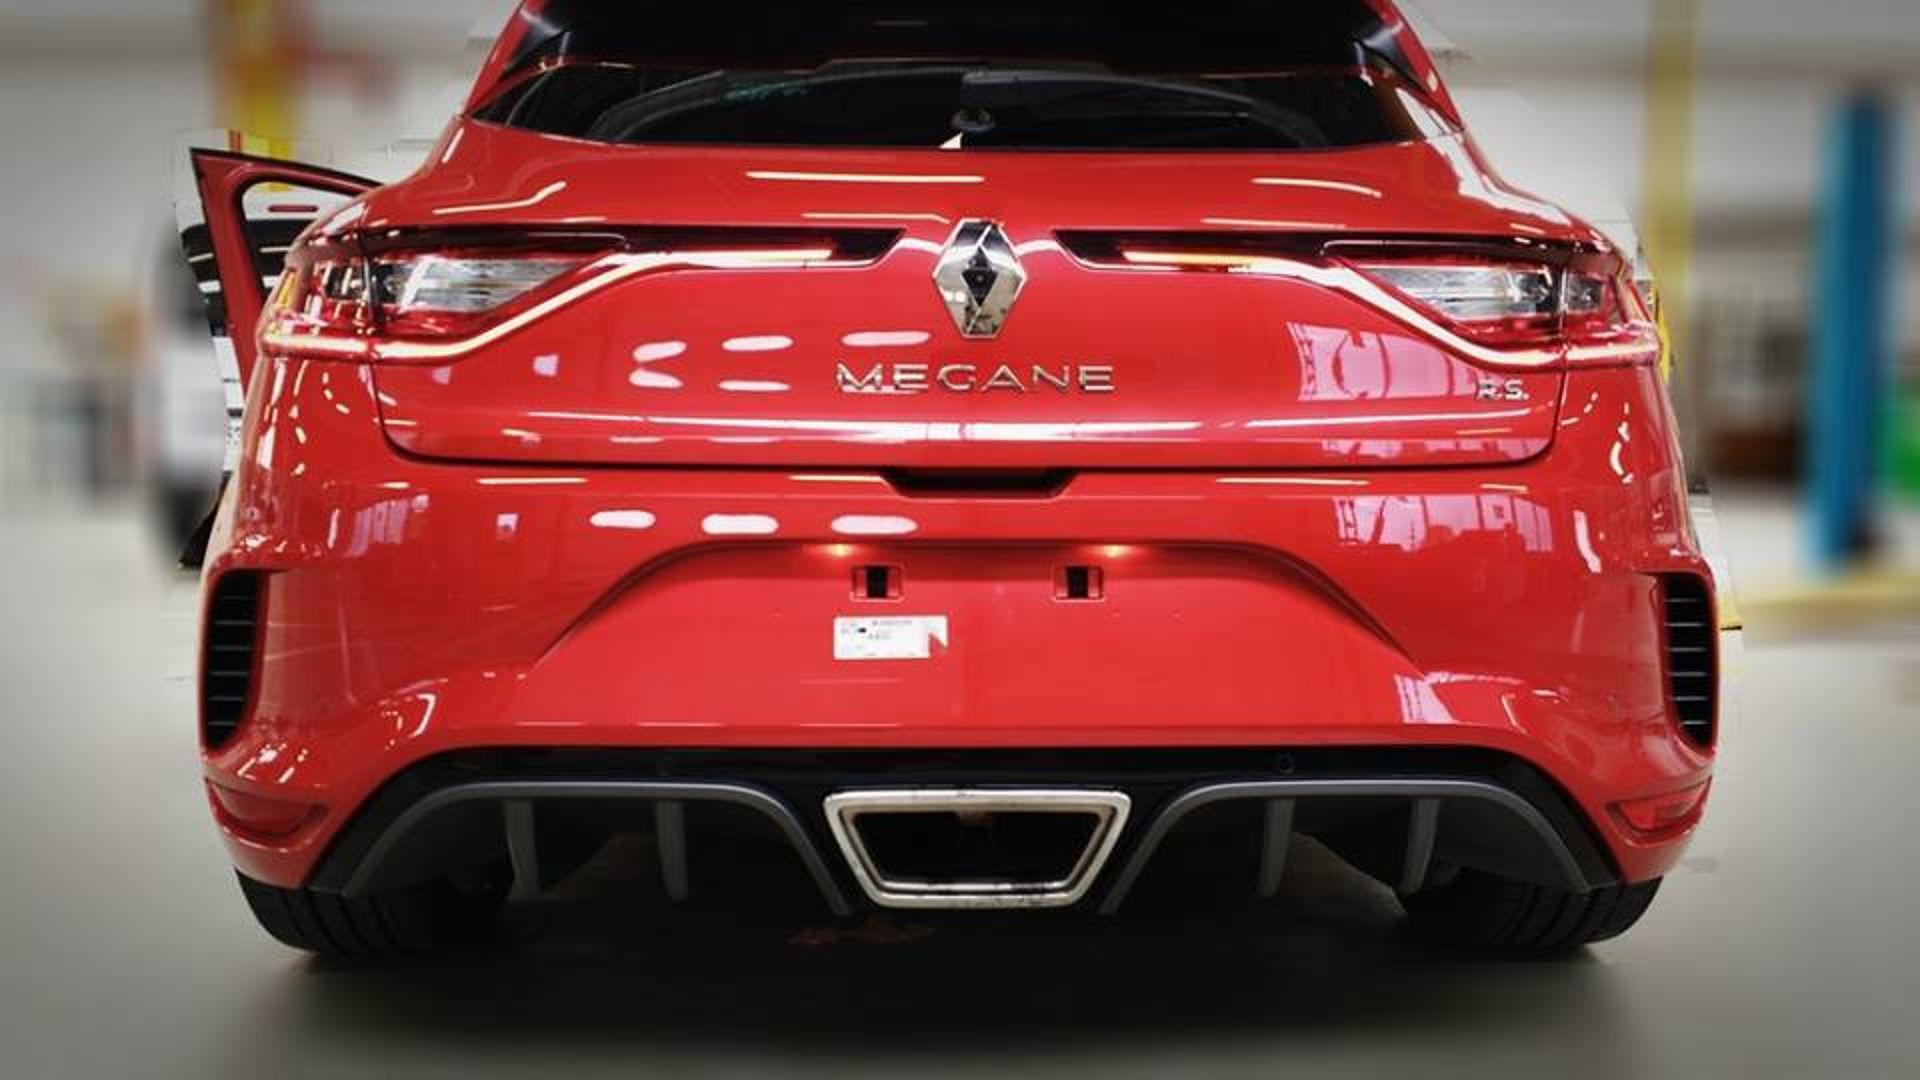 رينو ميجان RS الجديدة عالية الأداء تسرب صورها بفرنسا 1